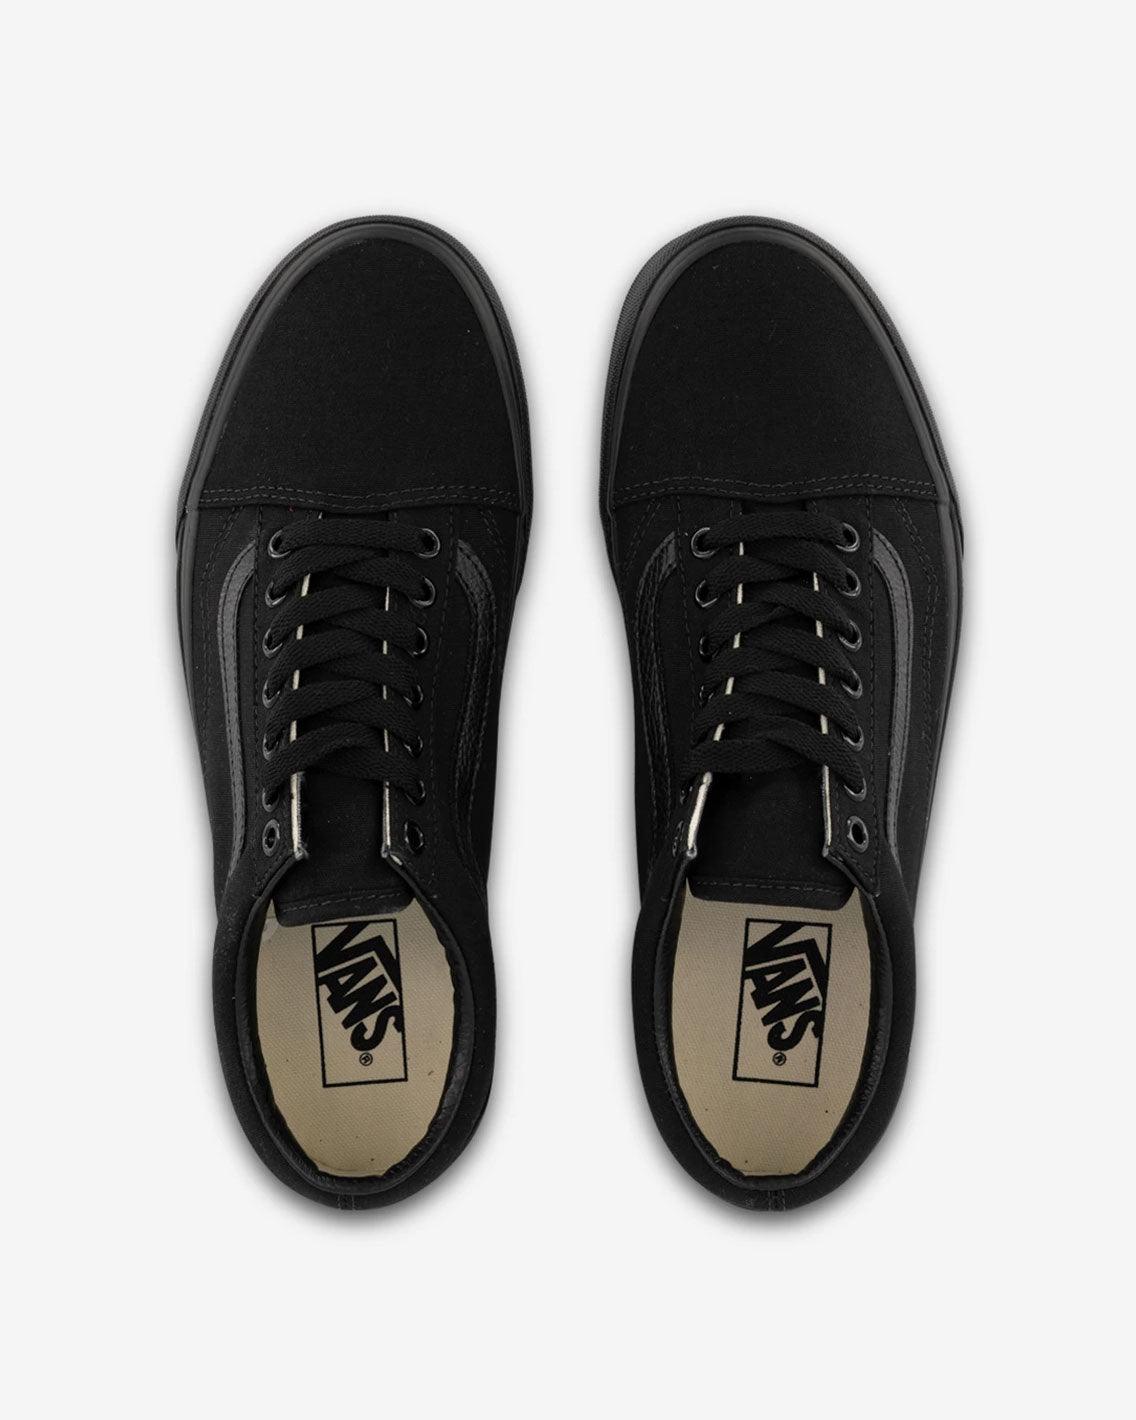 Vans - Old Skool Canvas - Black / Black Shoes Vans   